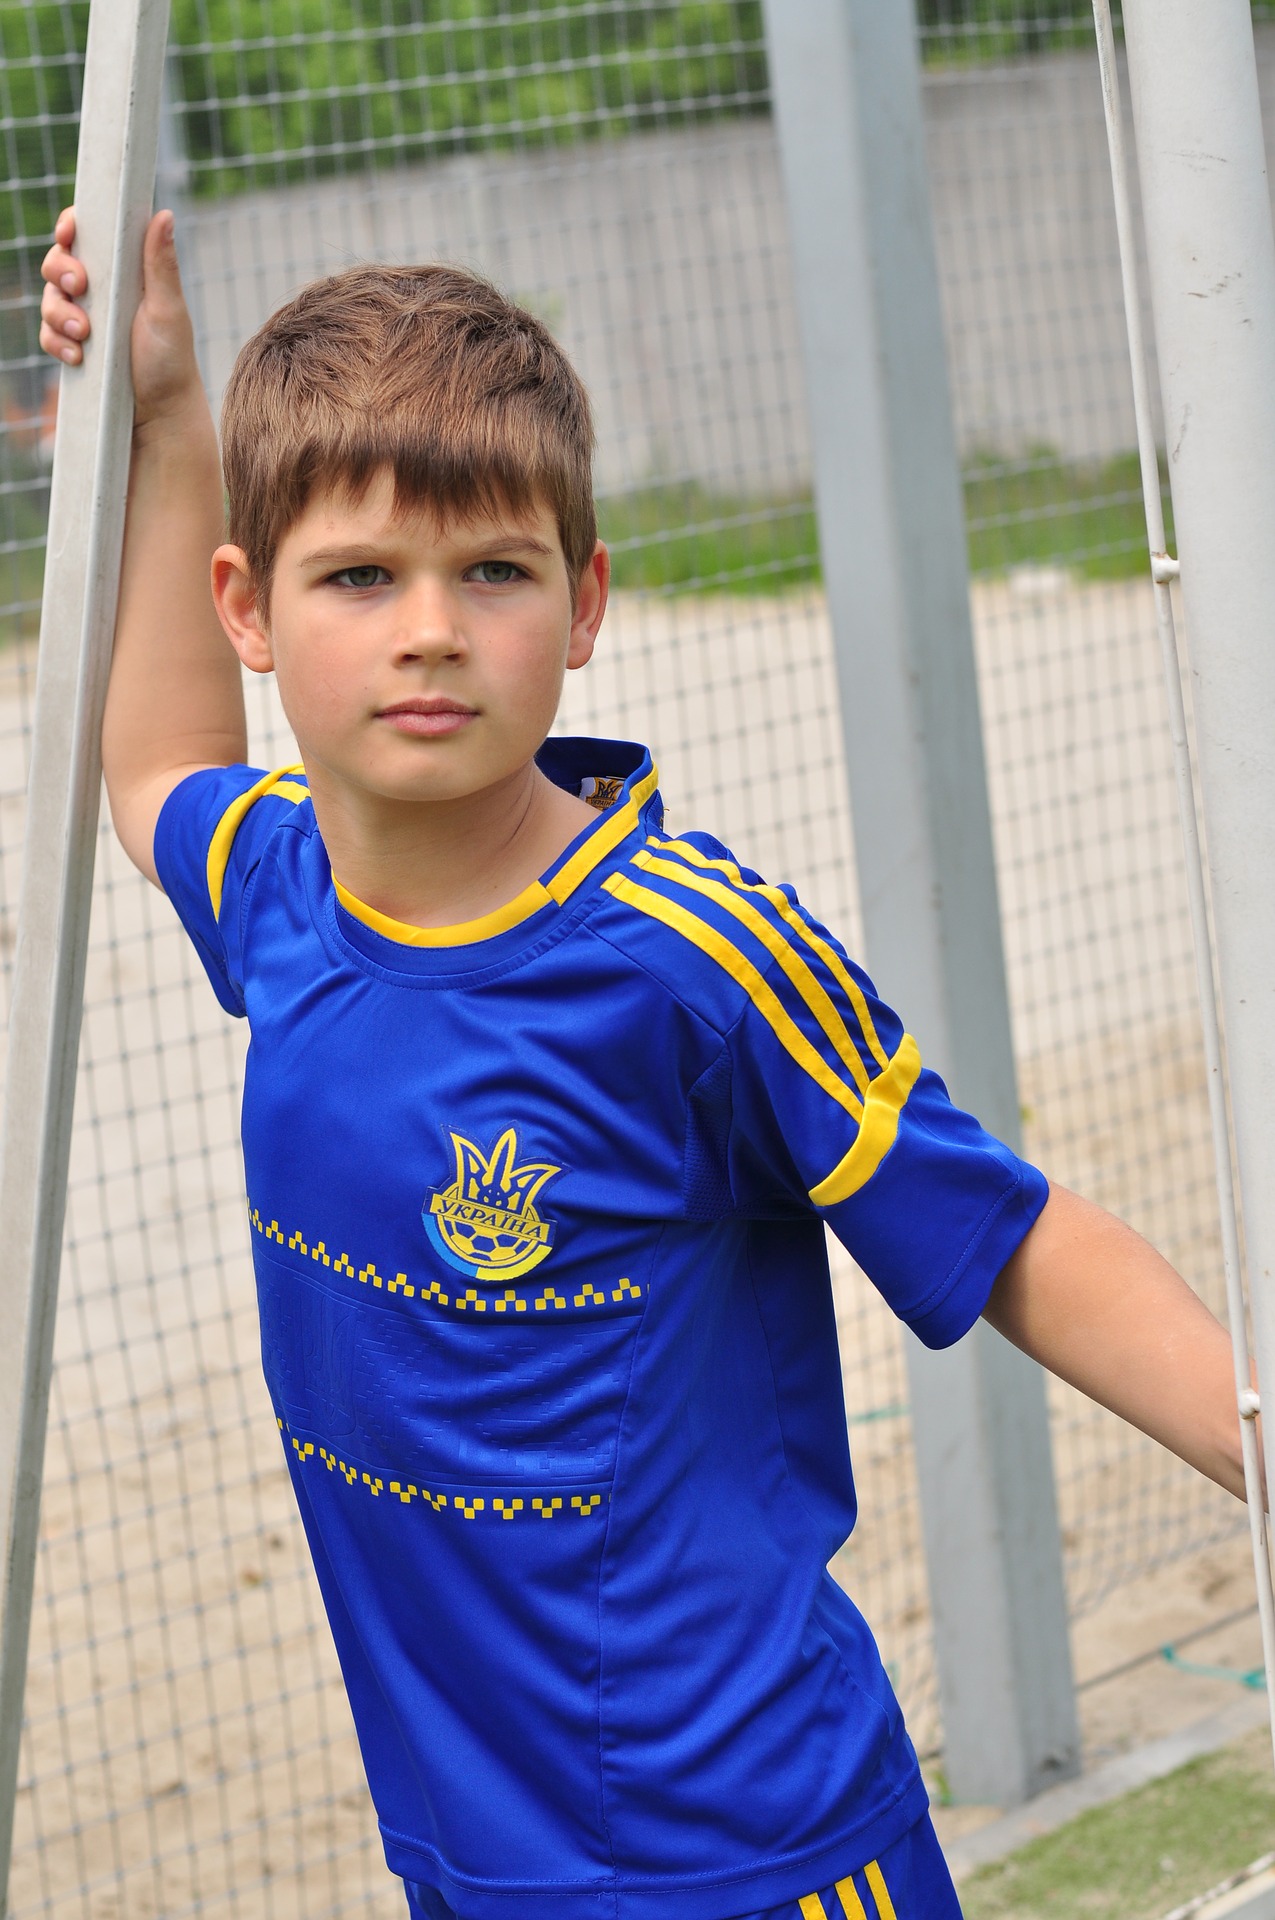 Slikom je prikazan dječak u nogometnom dresu.